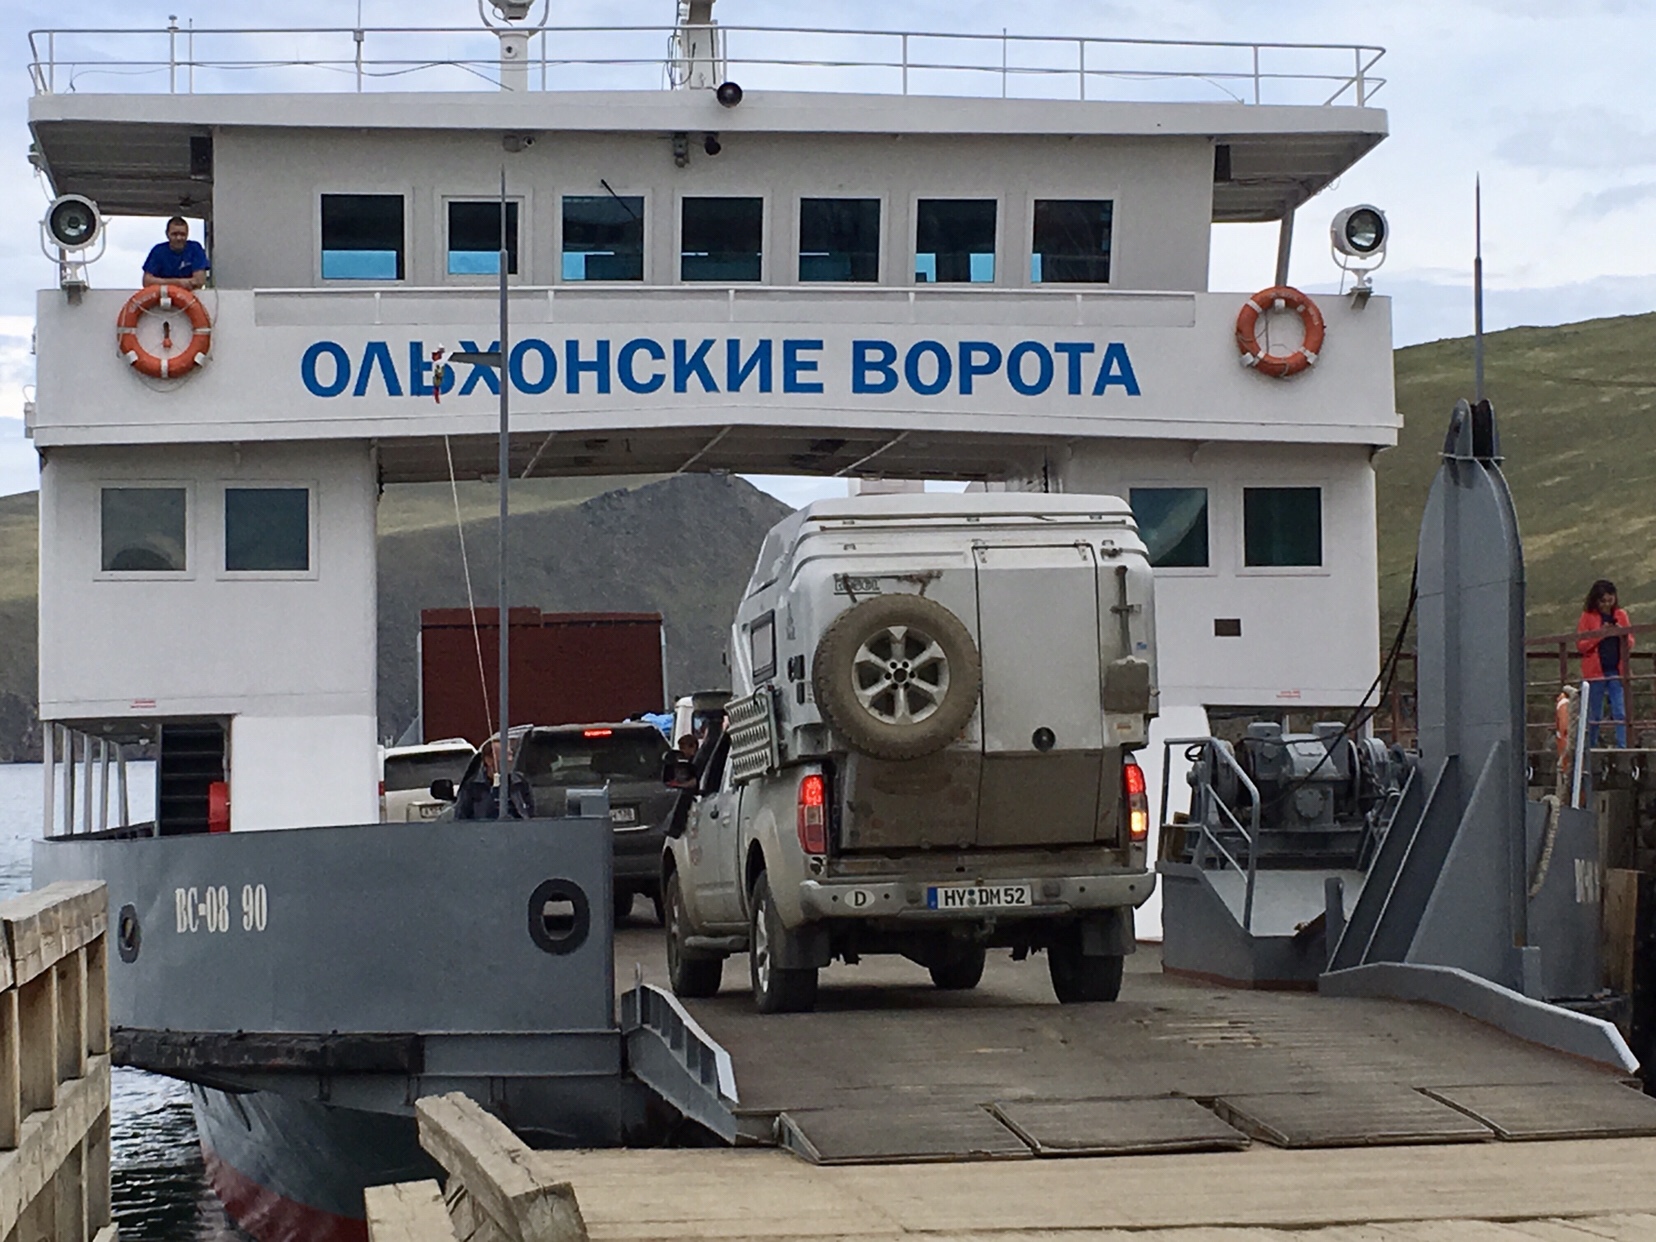 Reisetagebuch unserer Offroad-Reise mit dem Pickup Truck auf dem Sibirischen Trakt in den Fernen Osten Russlands